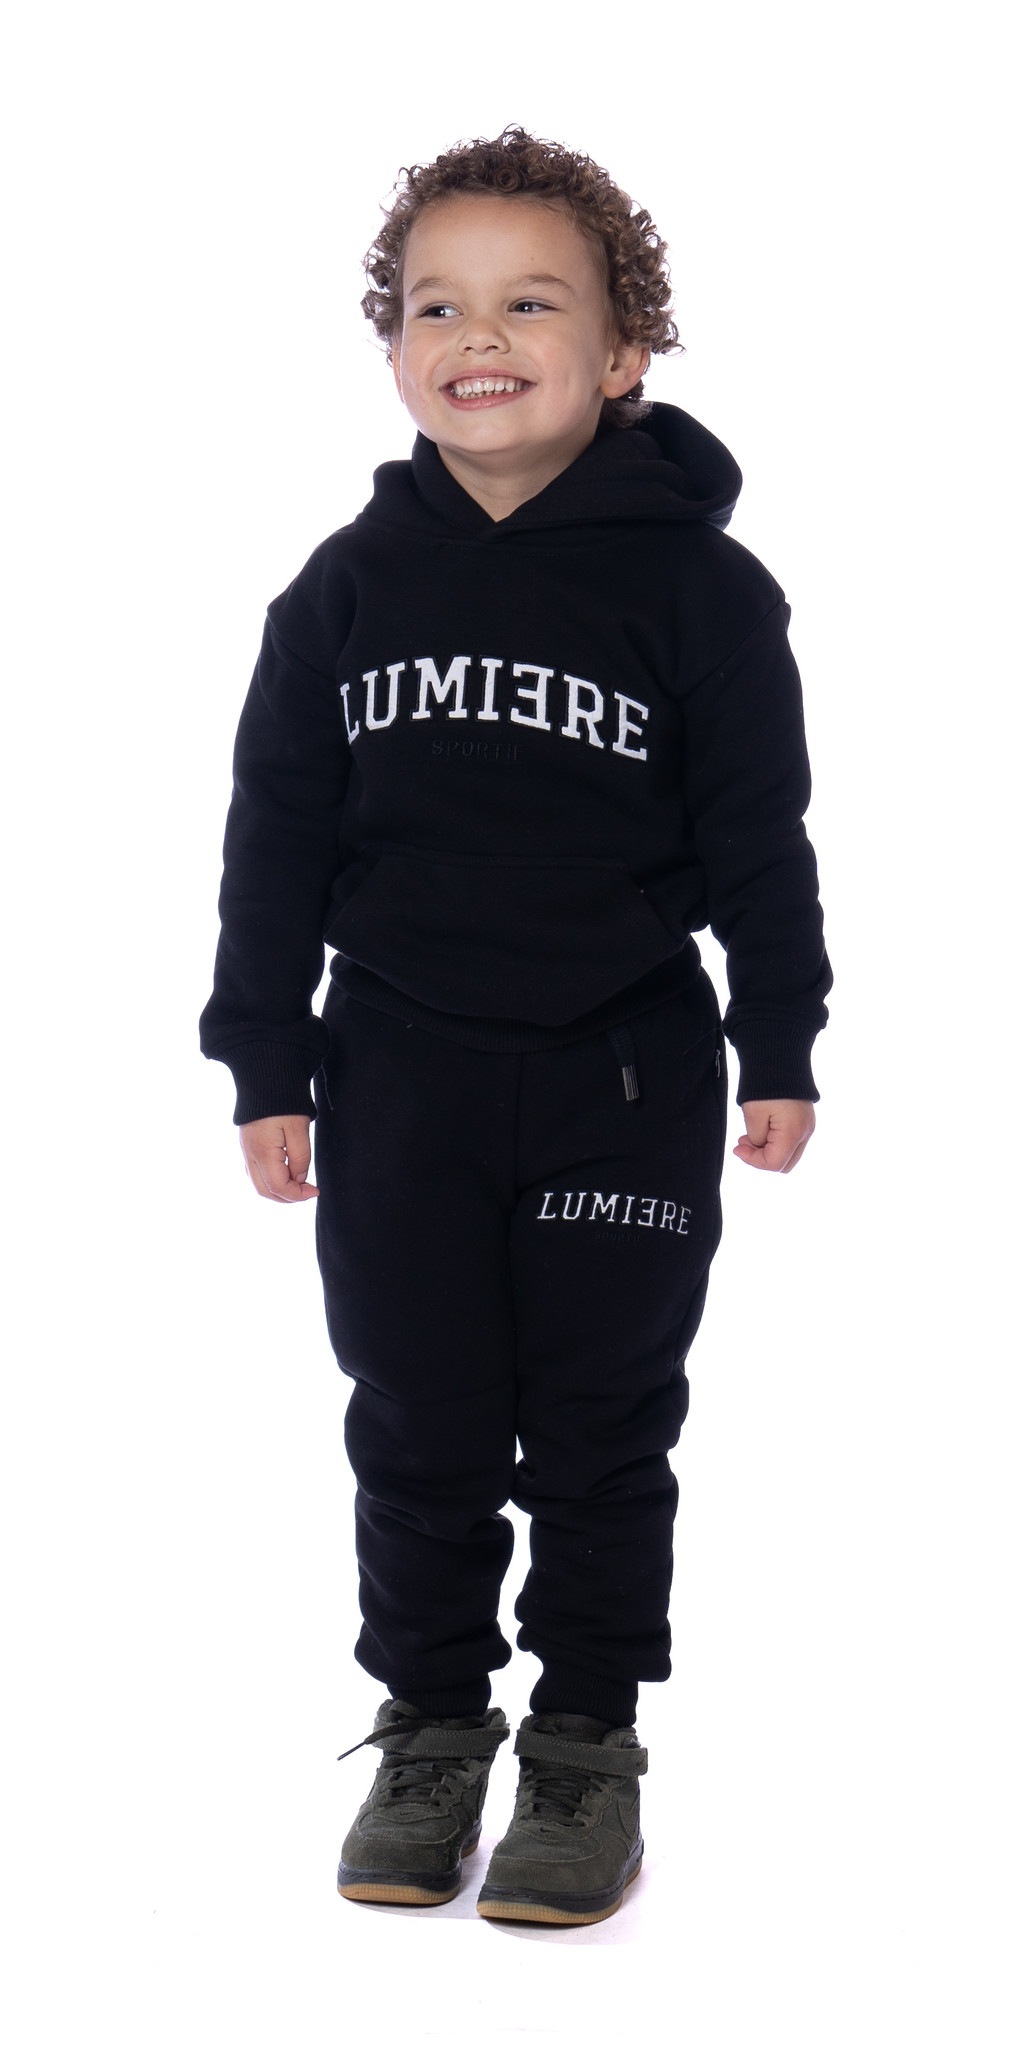 Lumi3re Sportif Kids Black - LUMI3RE